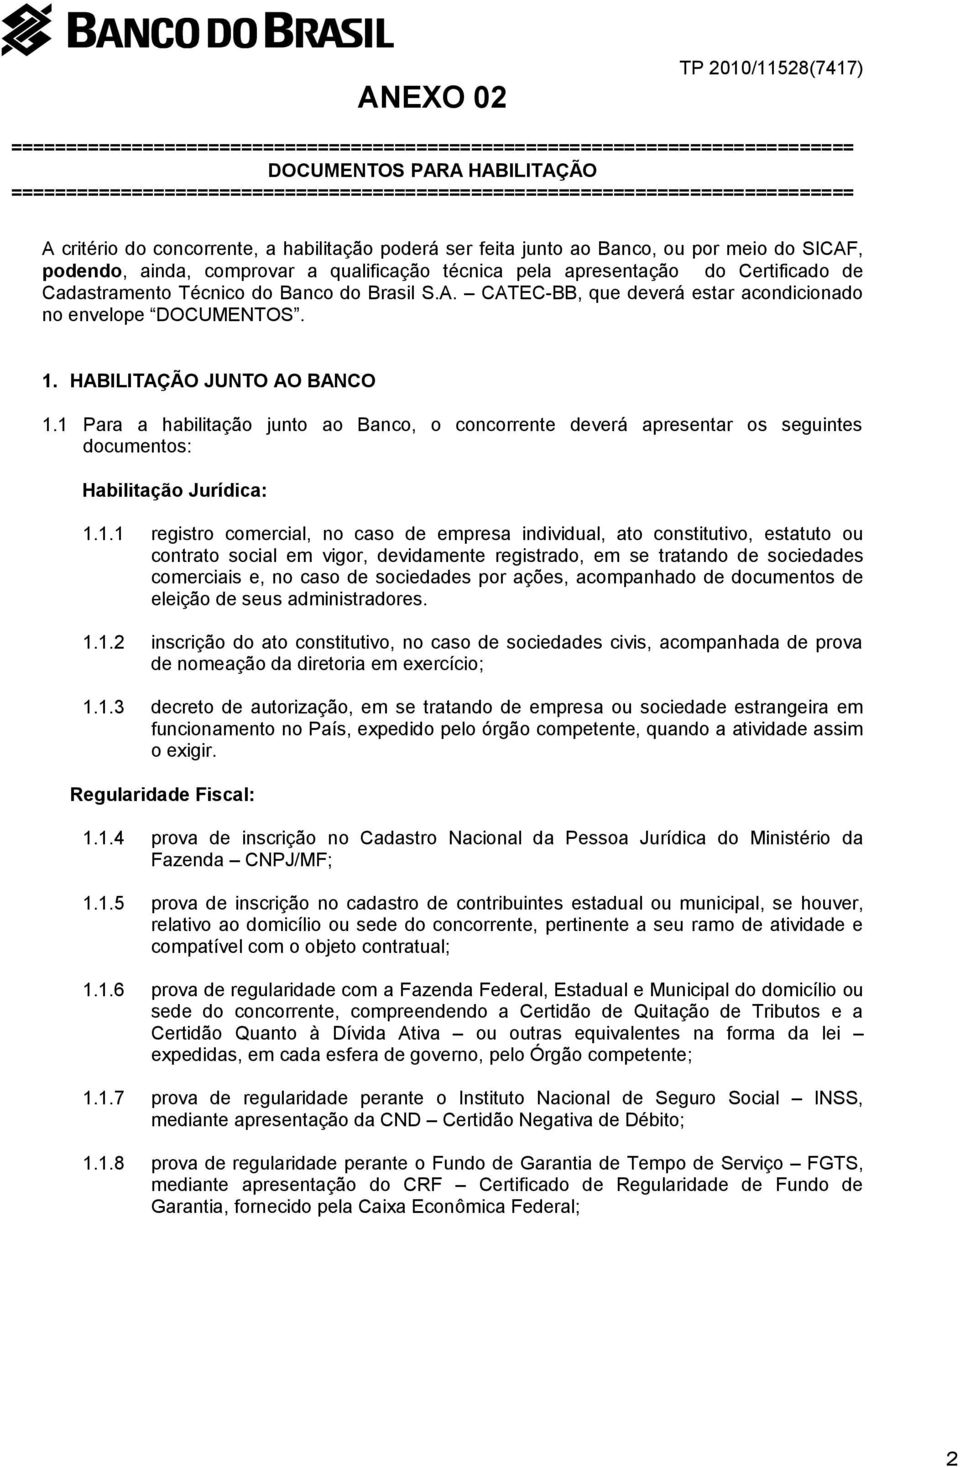 a qualificação técnica pela apresentação do Certificado de Cadastramento Técnico do Banco do Brasil S.A. CATEC-BB, que deverá estar acondicionado no envelope DOCUMENTOS. 1.